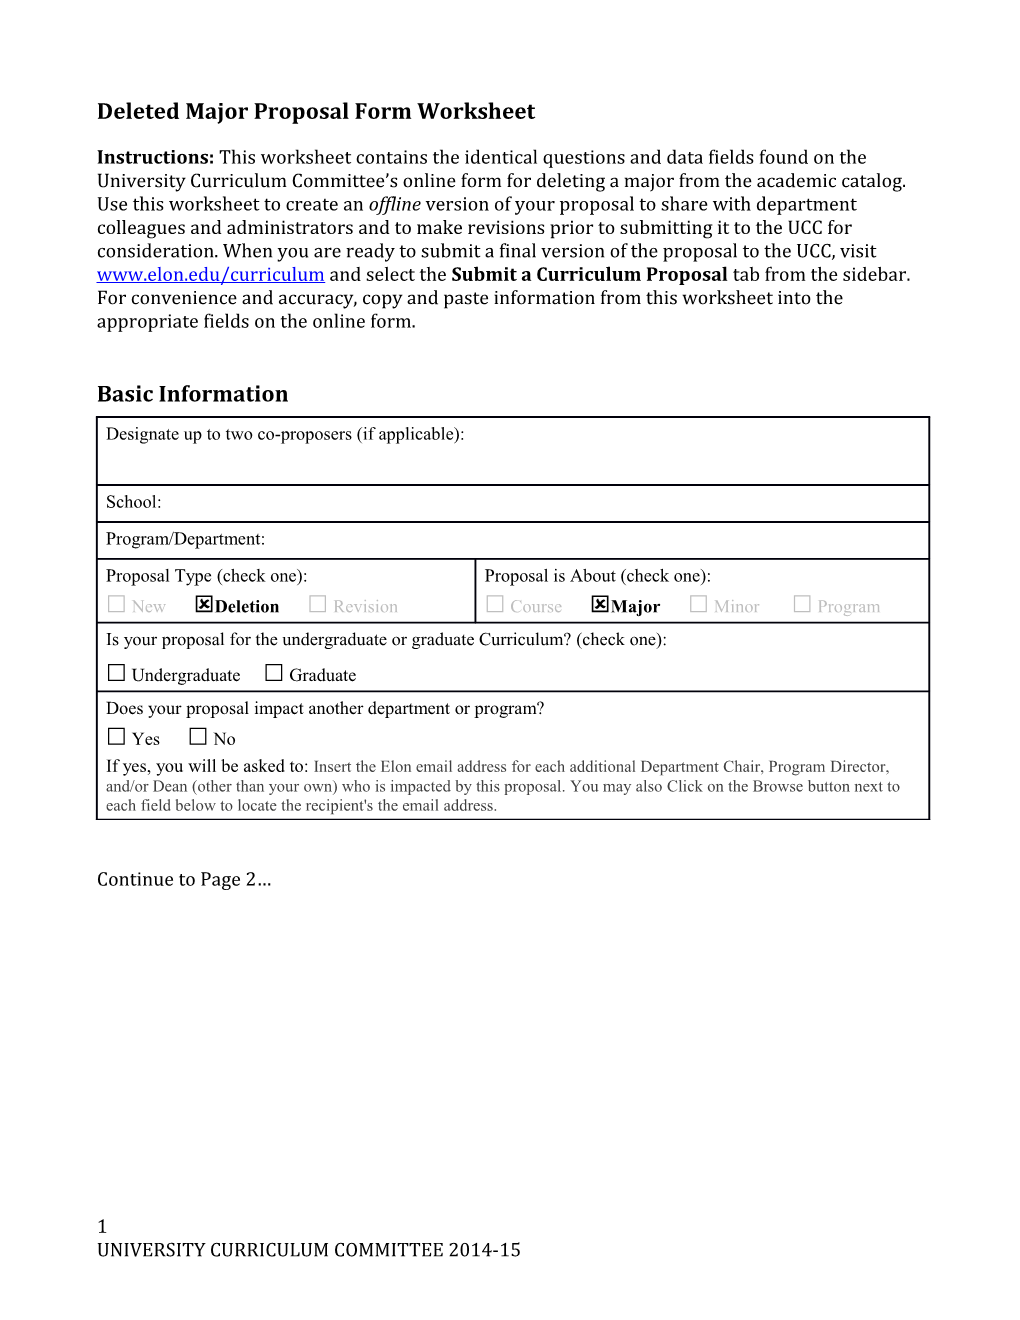 Deletedmajor Proposal Form Worksheet